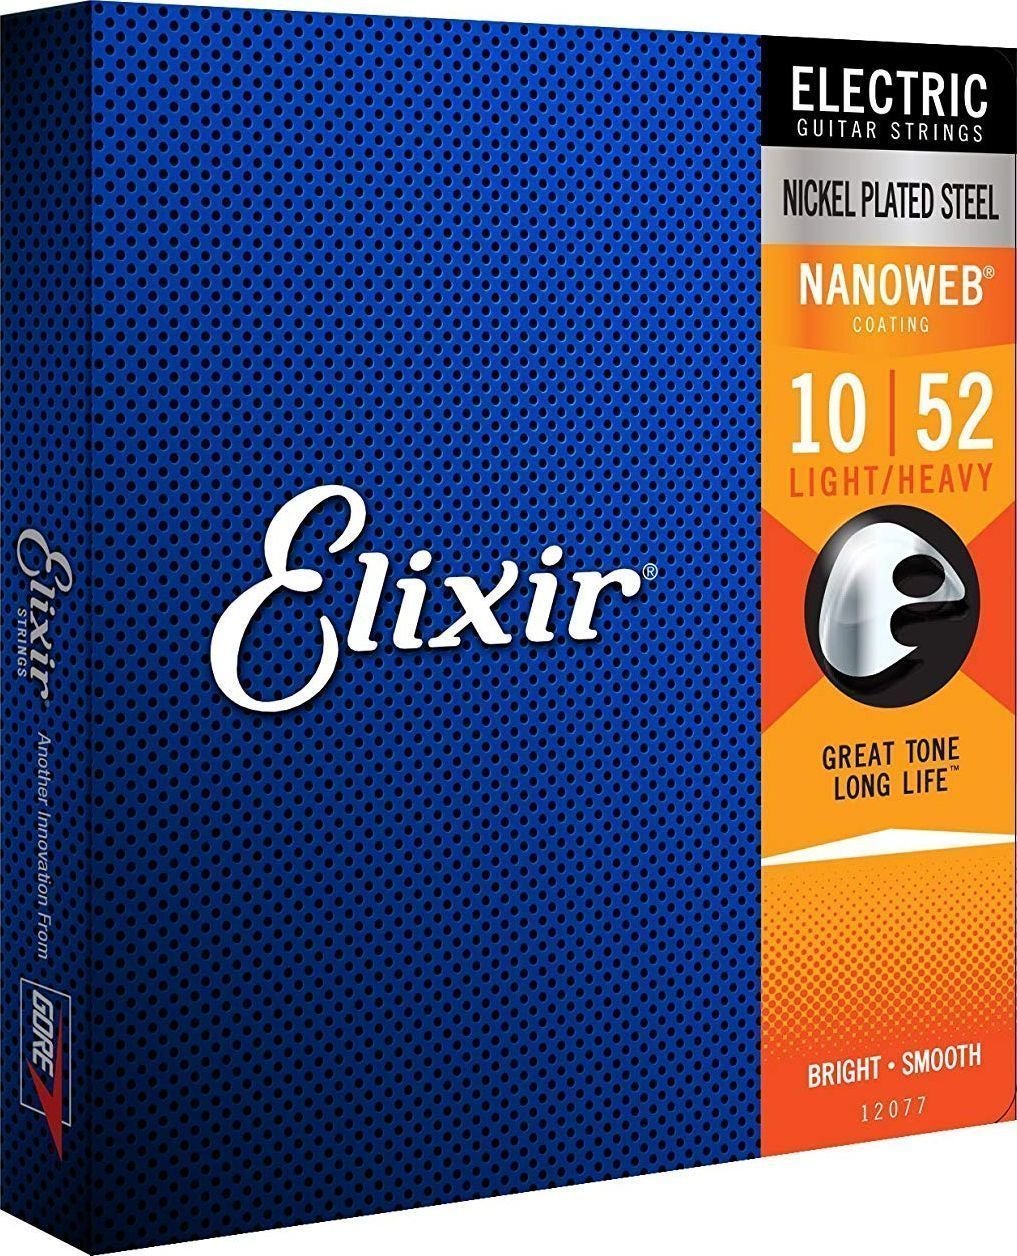 Cordes pour guitares électriques Elixir 12077 Nanoweb 10-52